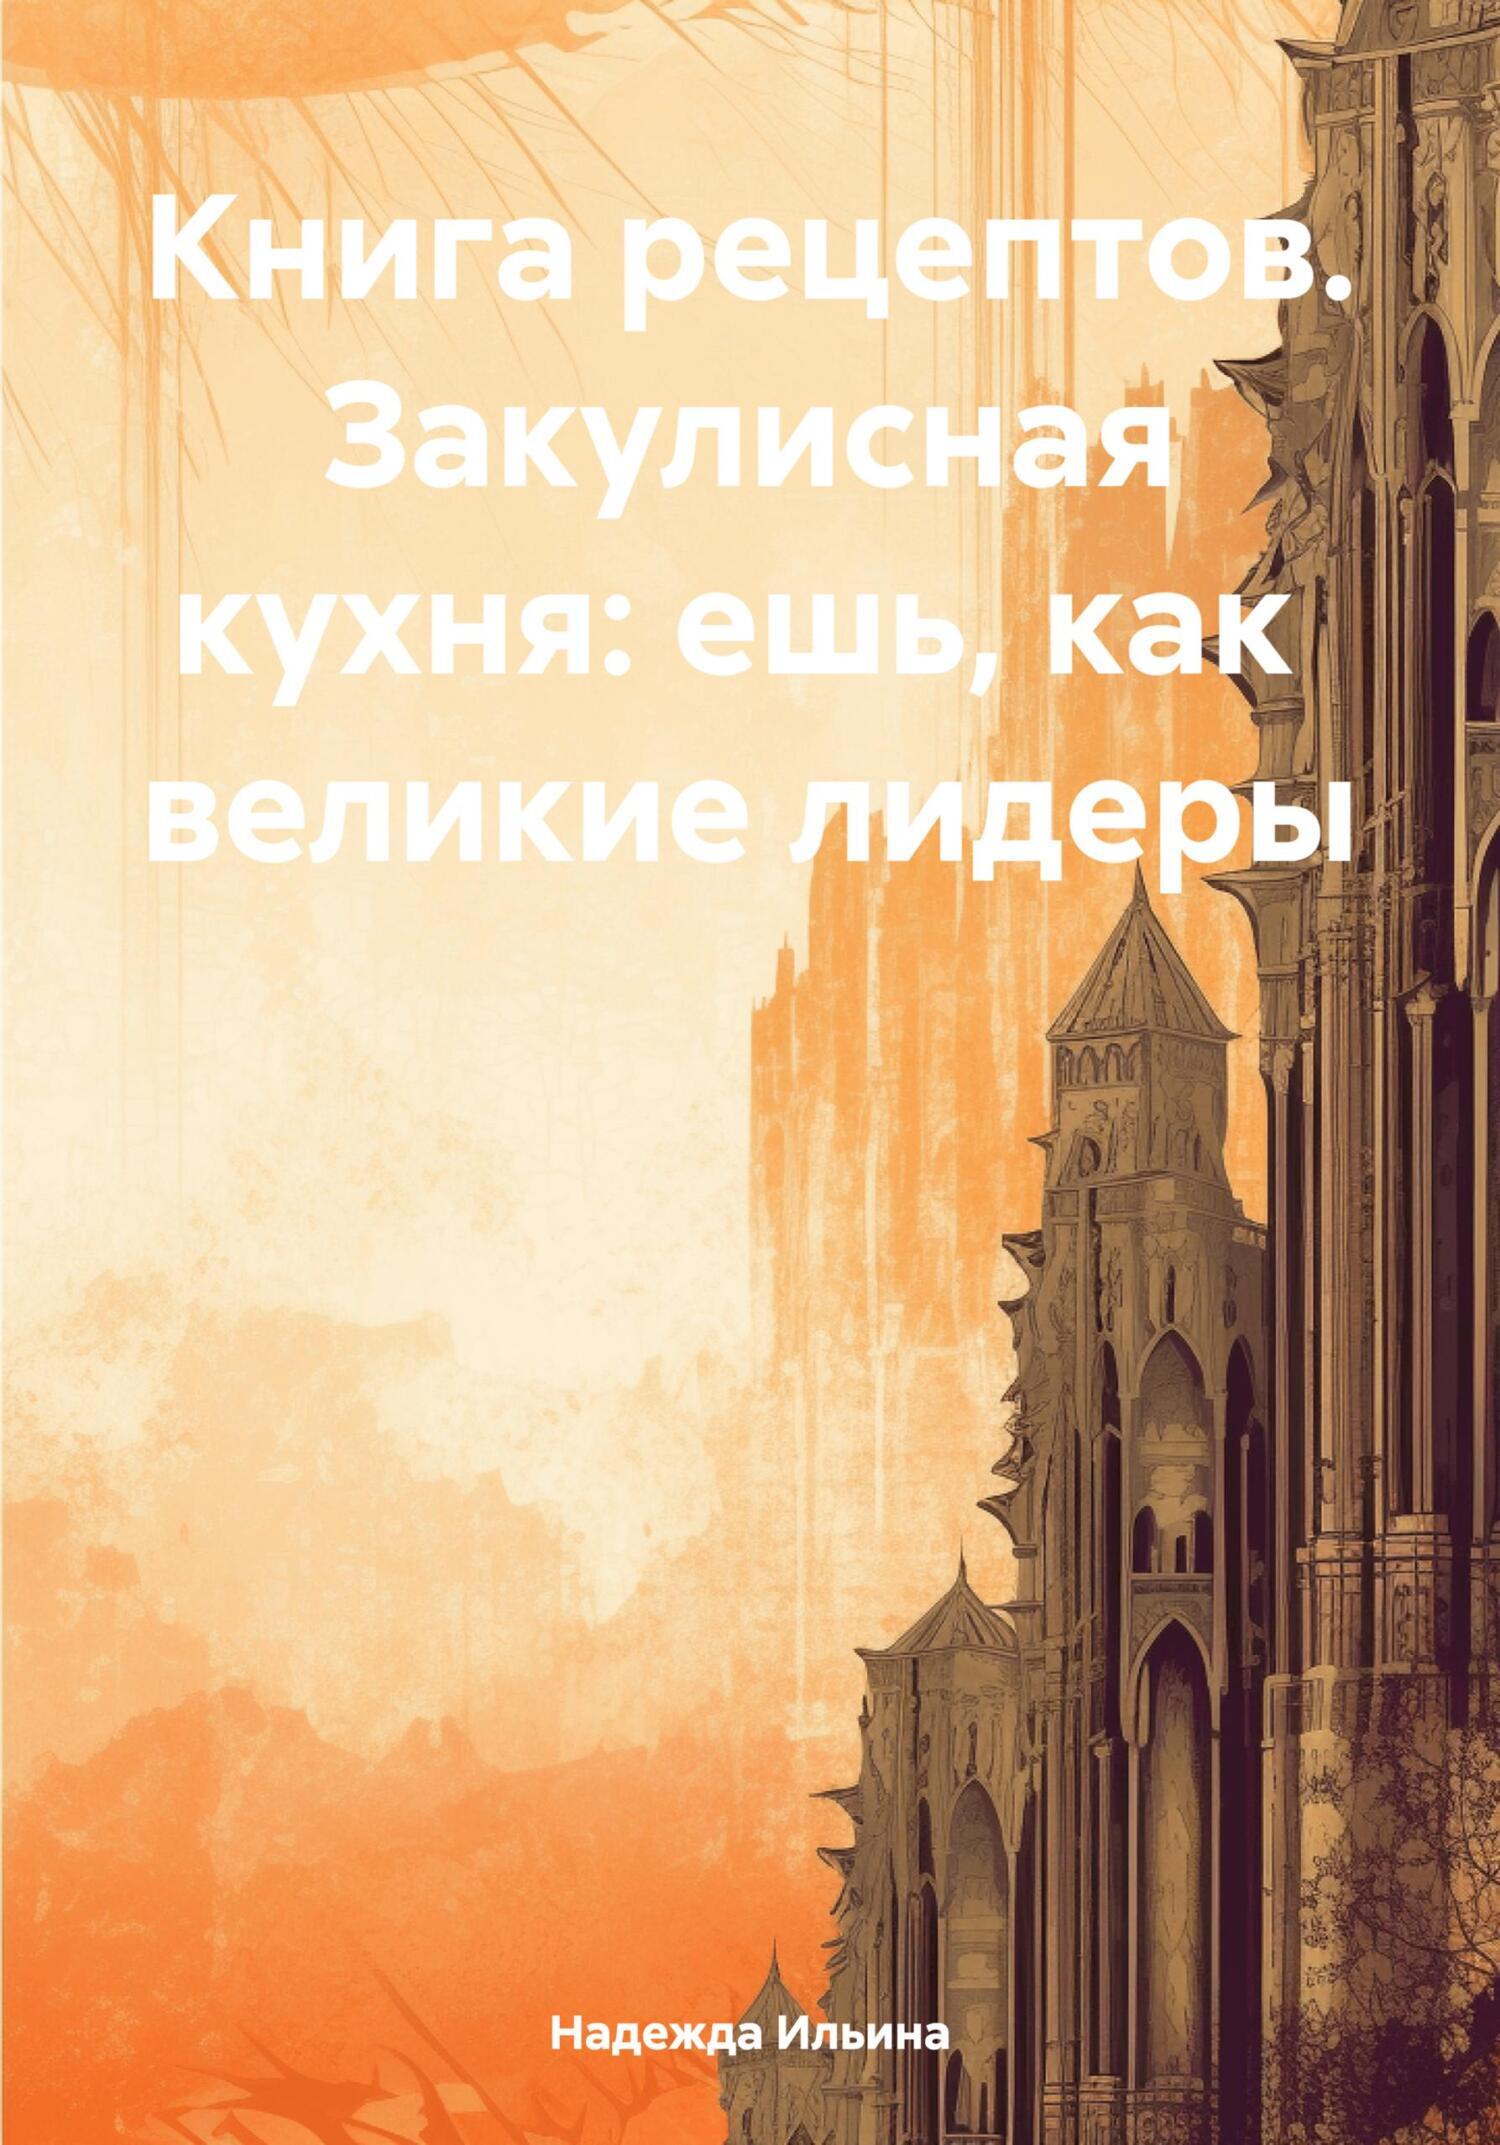 Антикварные кулинарные книги - купить в интернет-магазине «Москва» по цене от руб